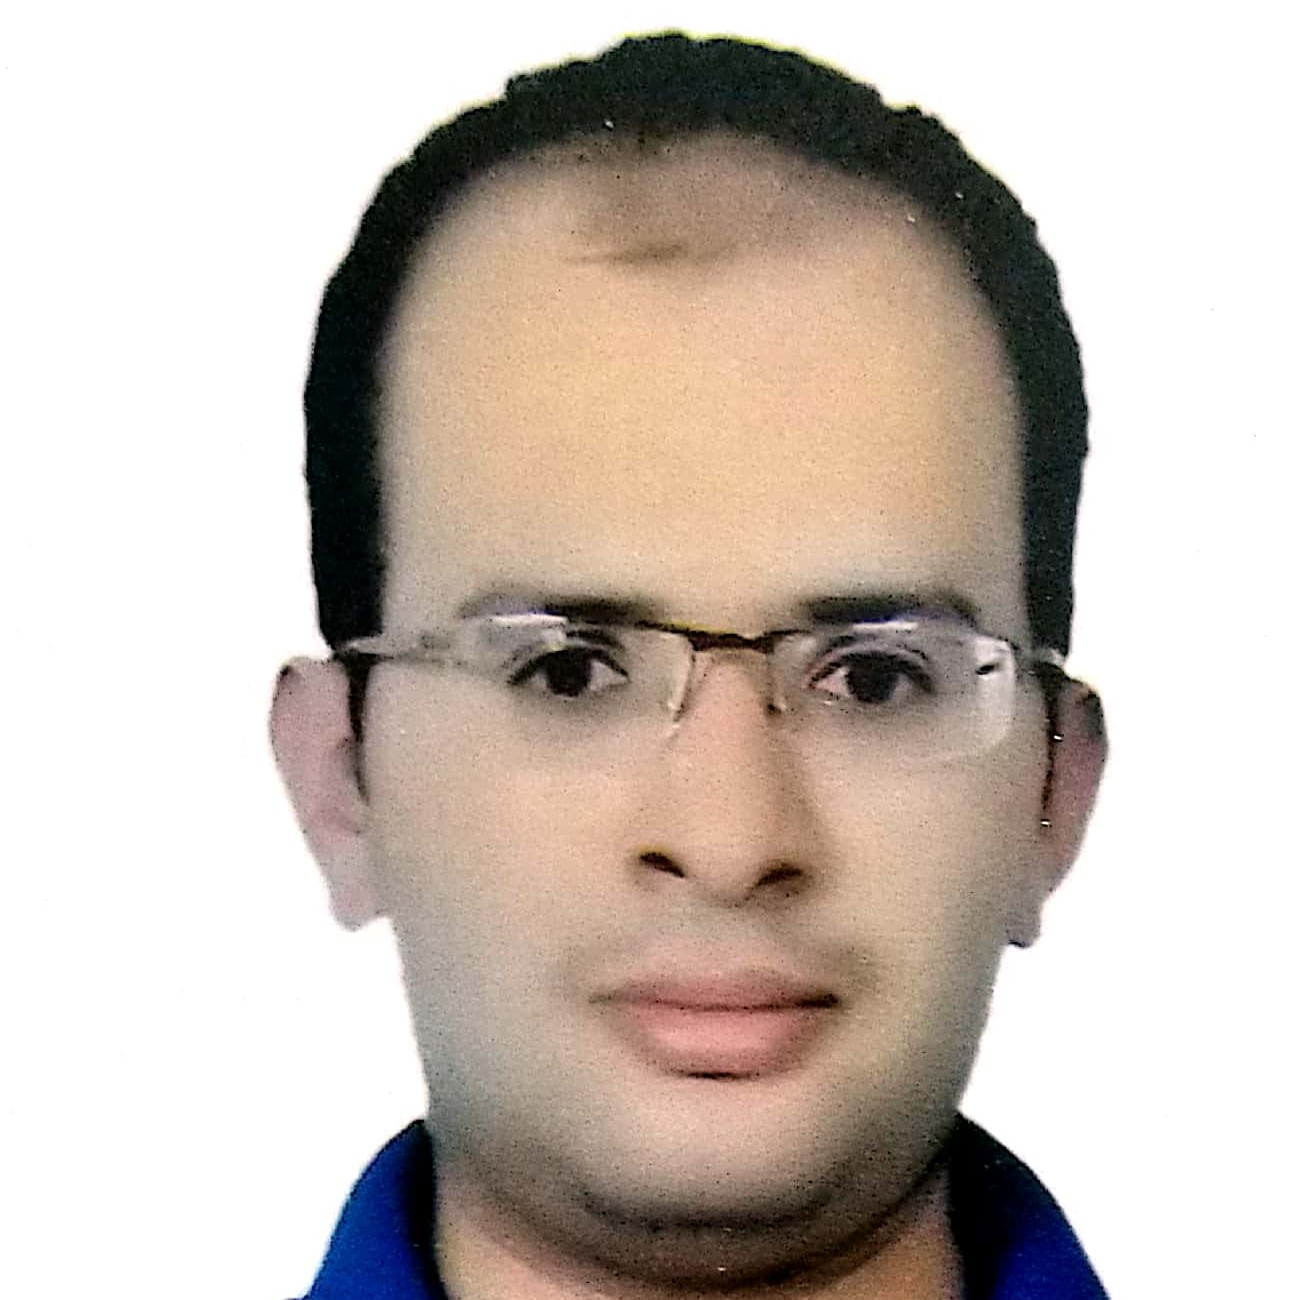 Dr. Mohamed Korayem Fattouh Hamed